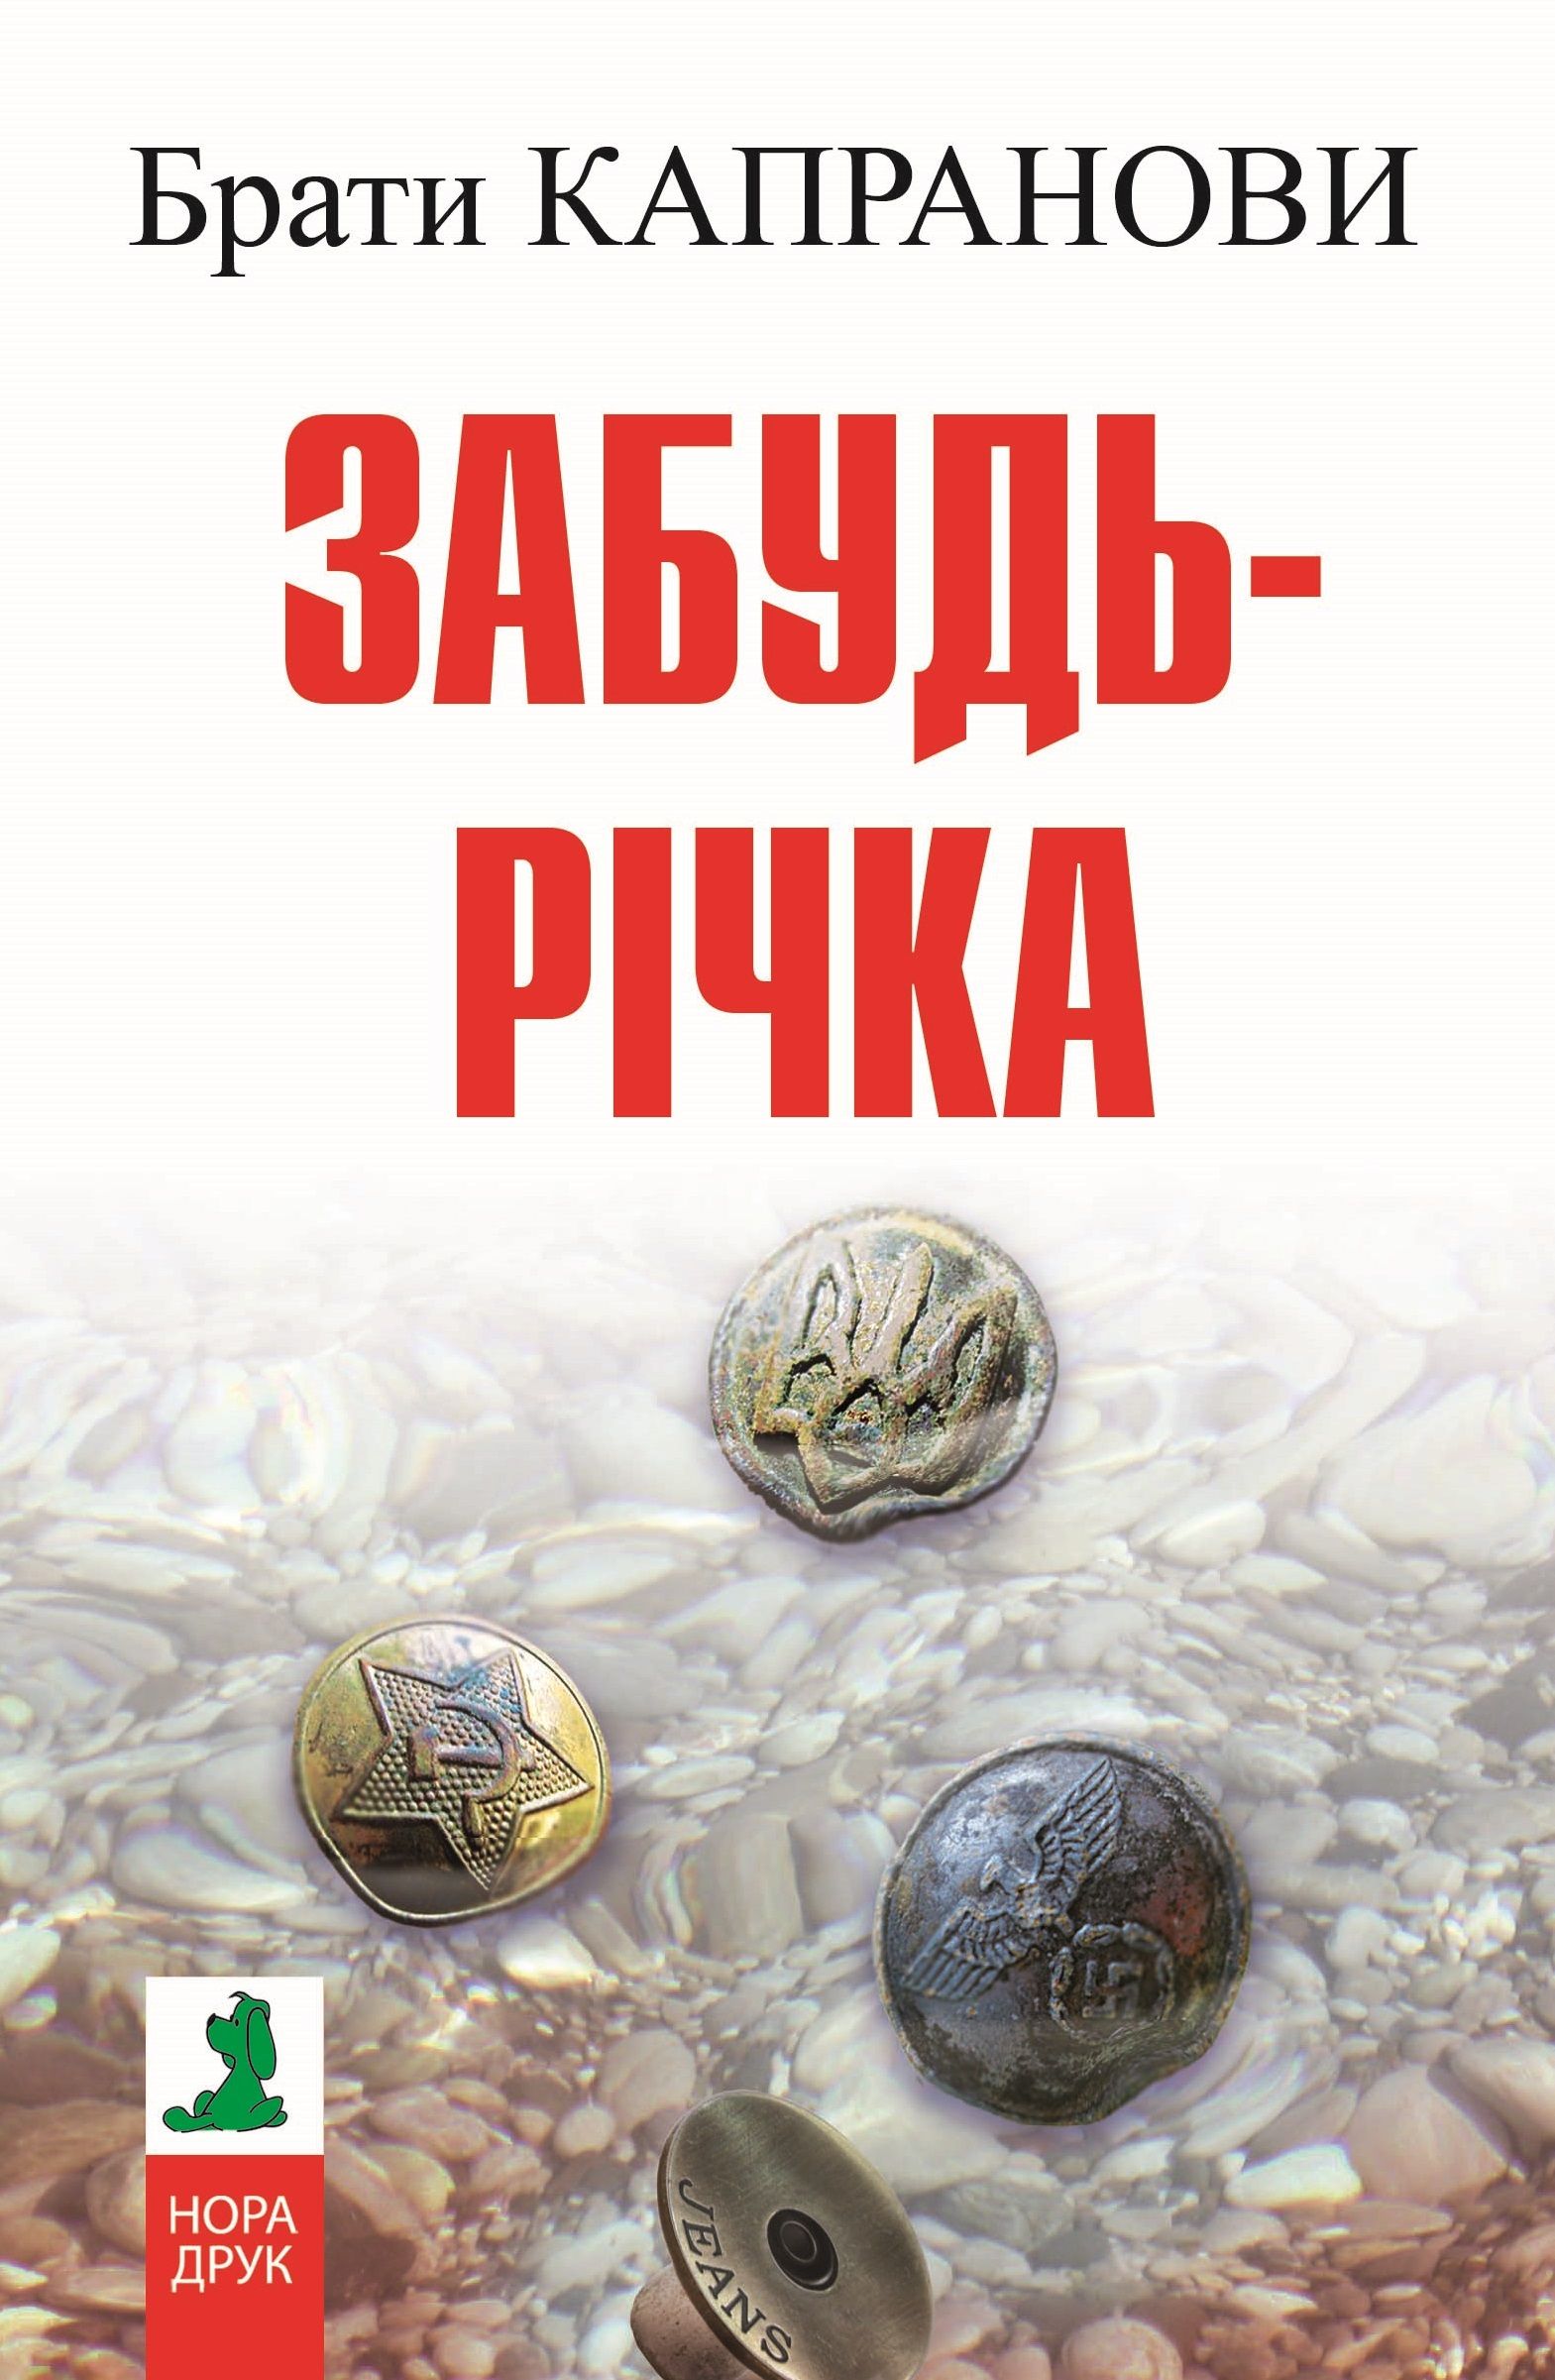 Забудь-річка (Авторські читання) - Брати Капранови - Слухати Книги Українською Онлайн Безкоштовно 📘 Knigi-Audio.com/uk/